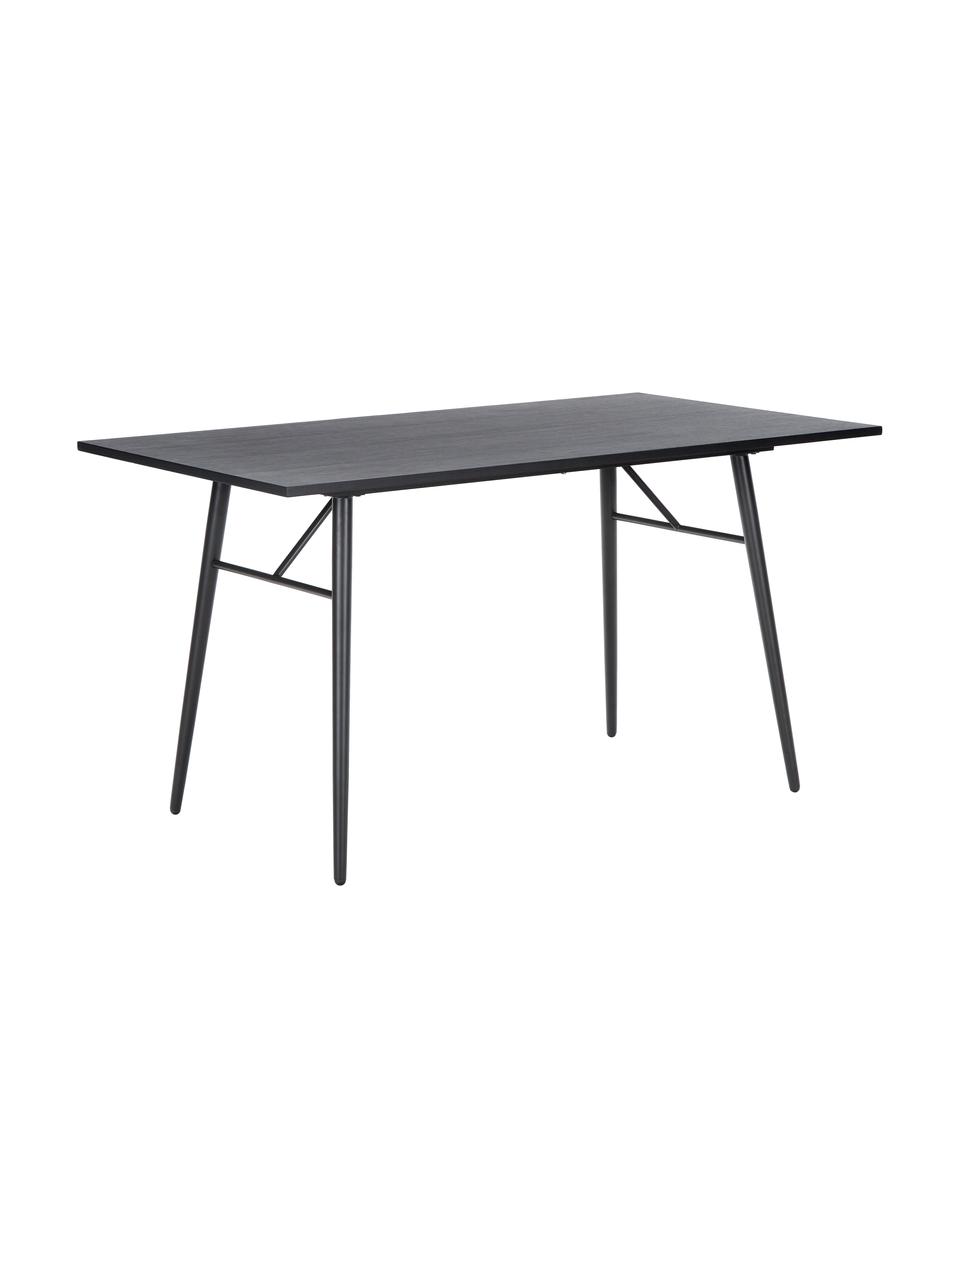 Holztisch Jette mit Metallgestell, Tischplatte: Eichenholzfurnier, lackie, Beine: Metall, pulverbeschichtet, Schwarz, B 140 x T 80 cm